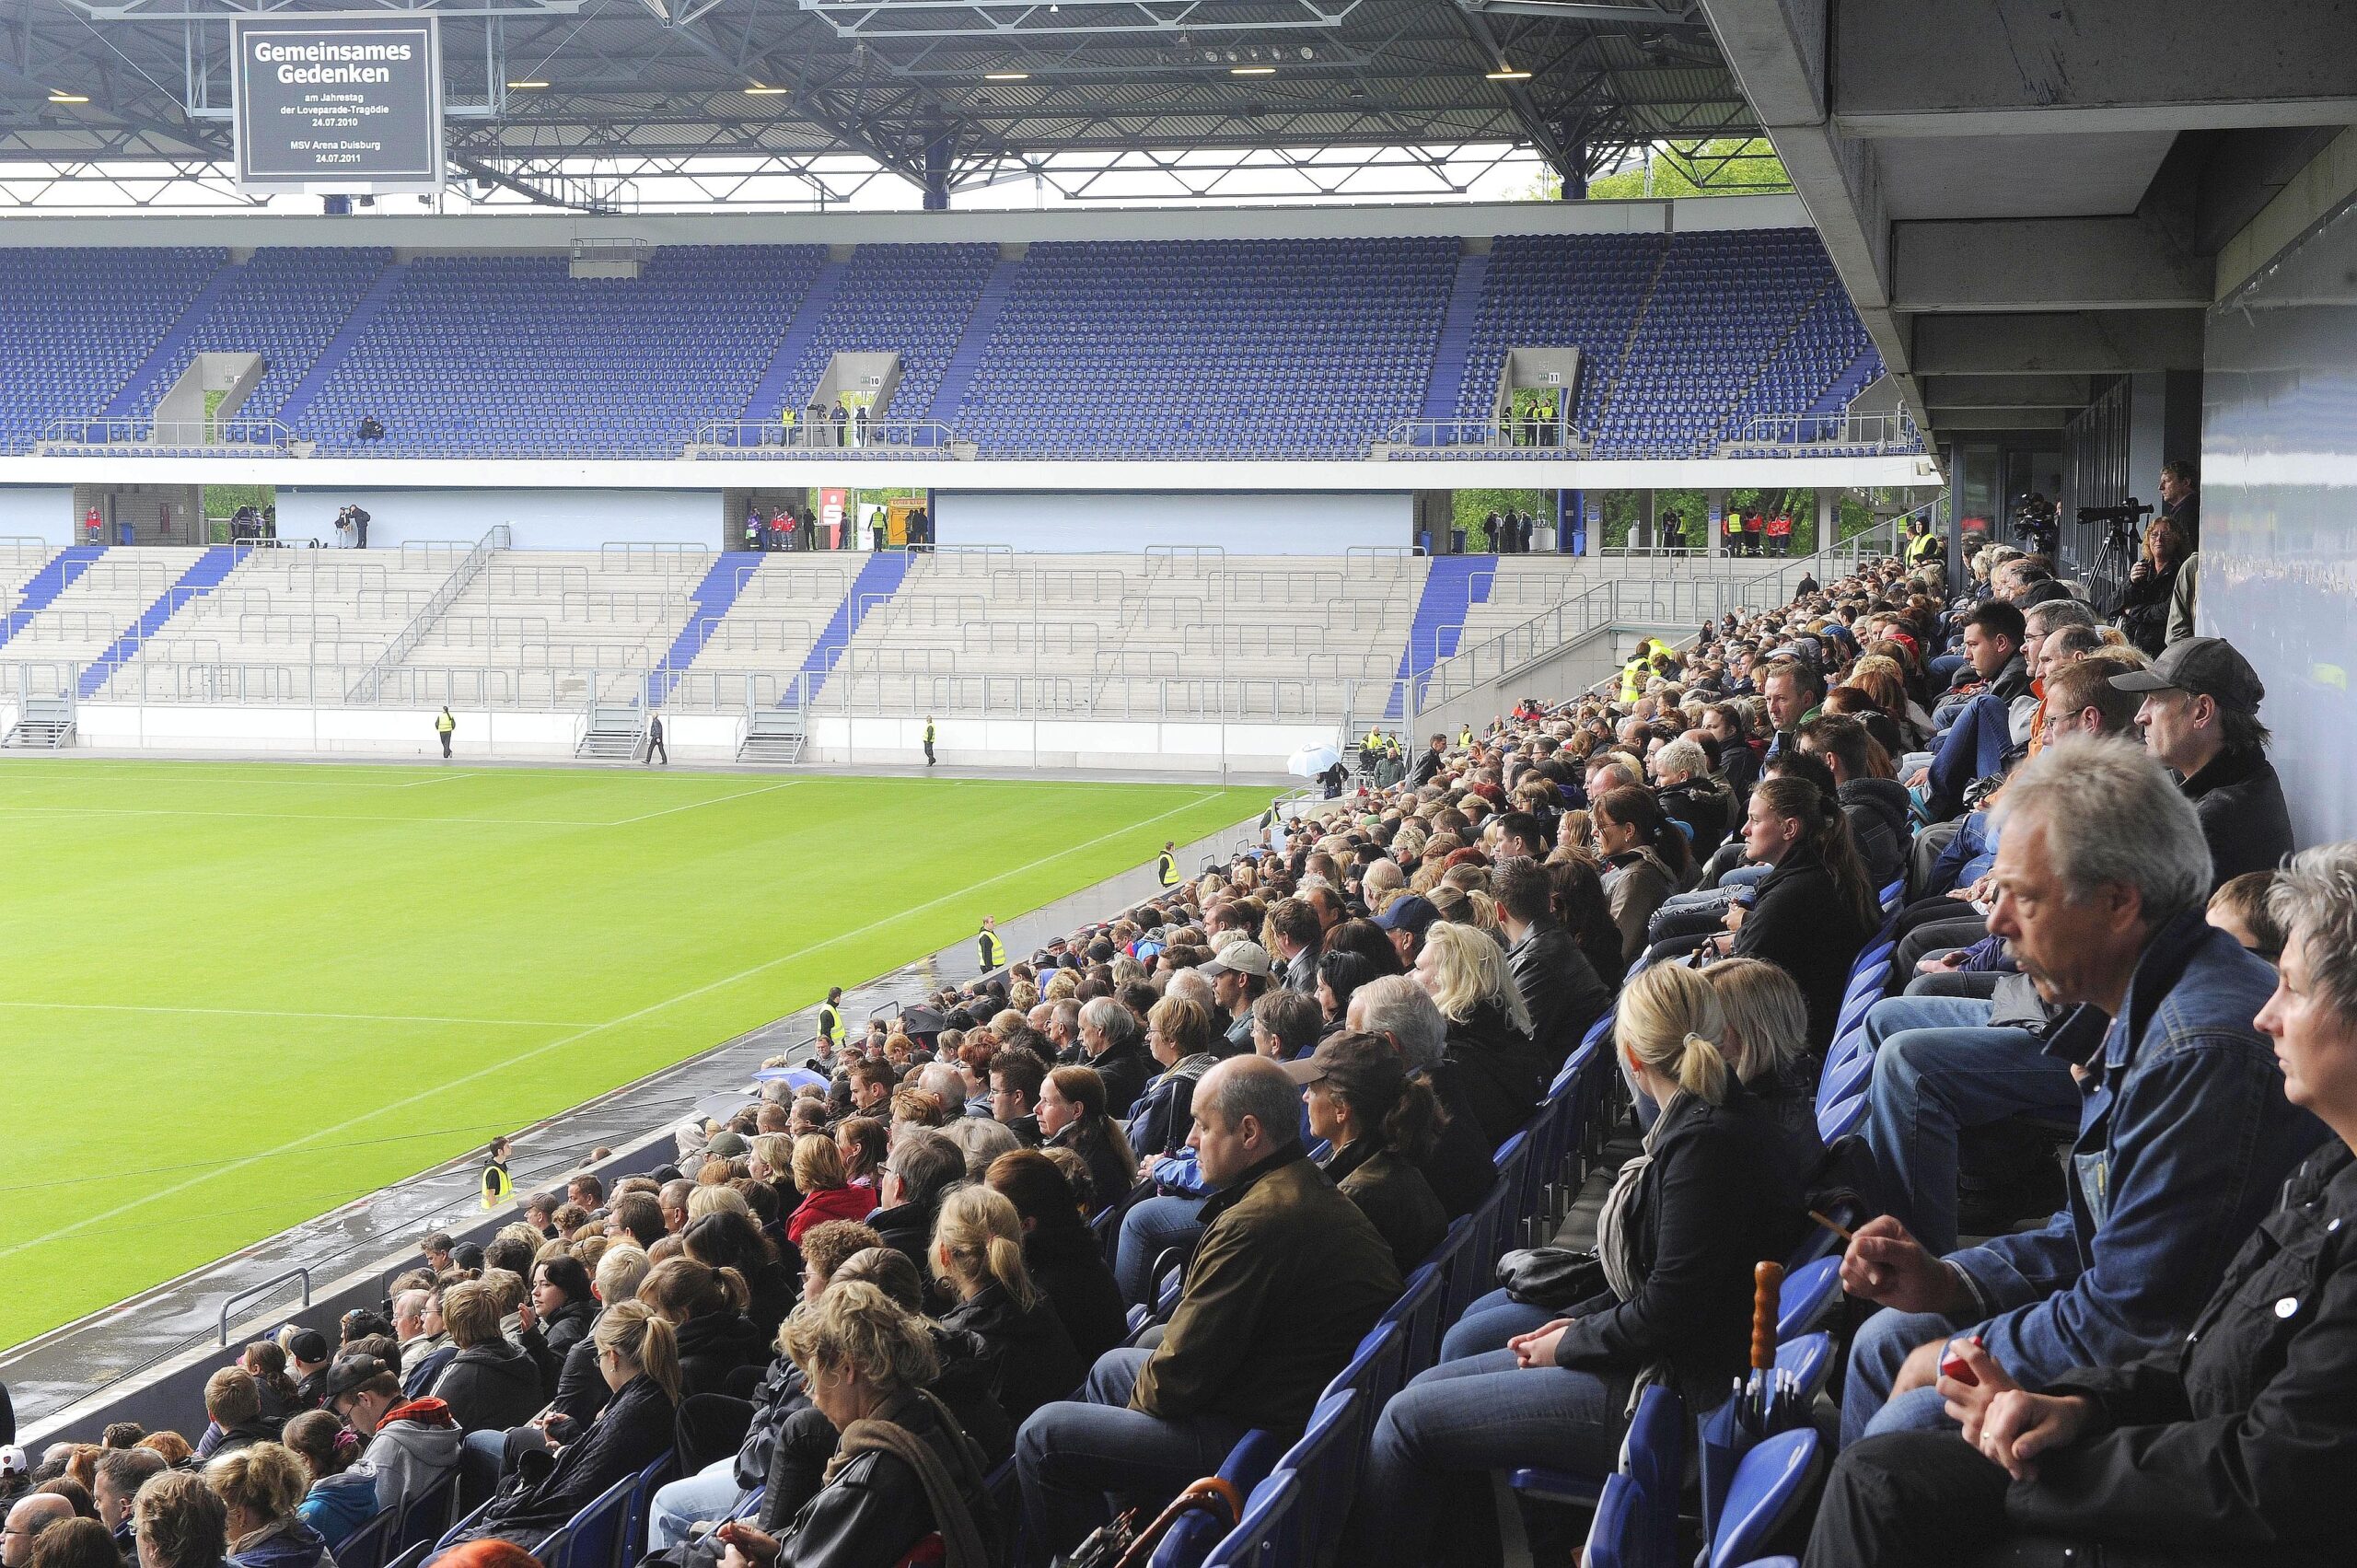 Besucher der Gedenkfeier für die Opfer der Loveparade in der MSV-Arena in Duisburg. Foto: Kai Kitschenberg/WAZFotoPool